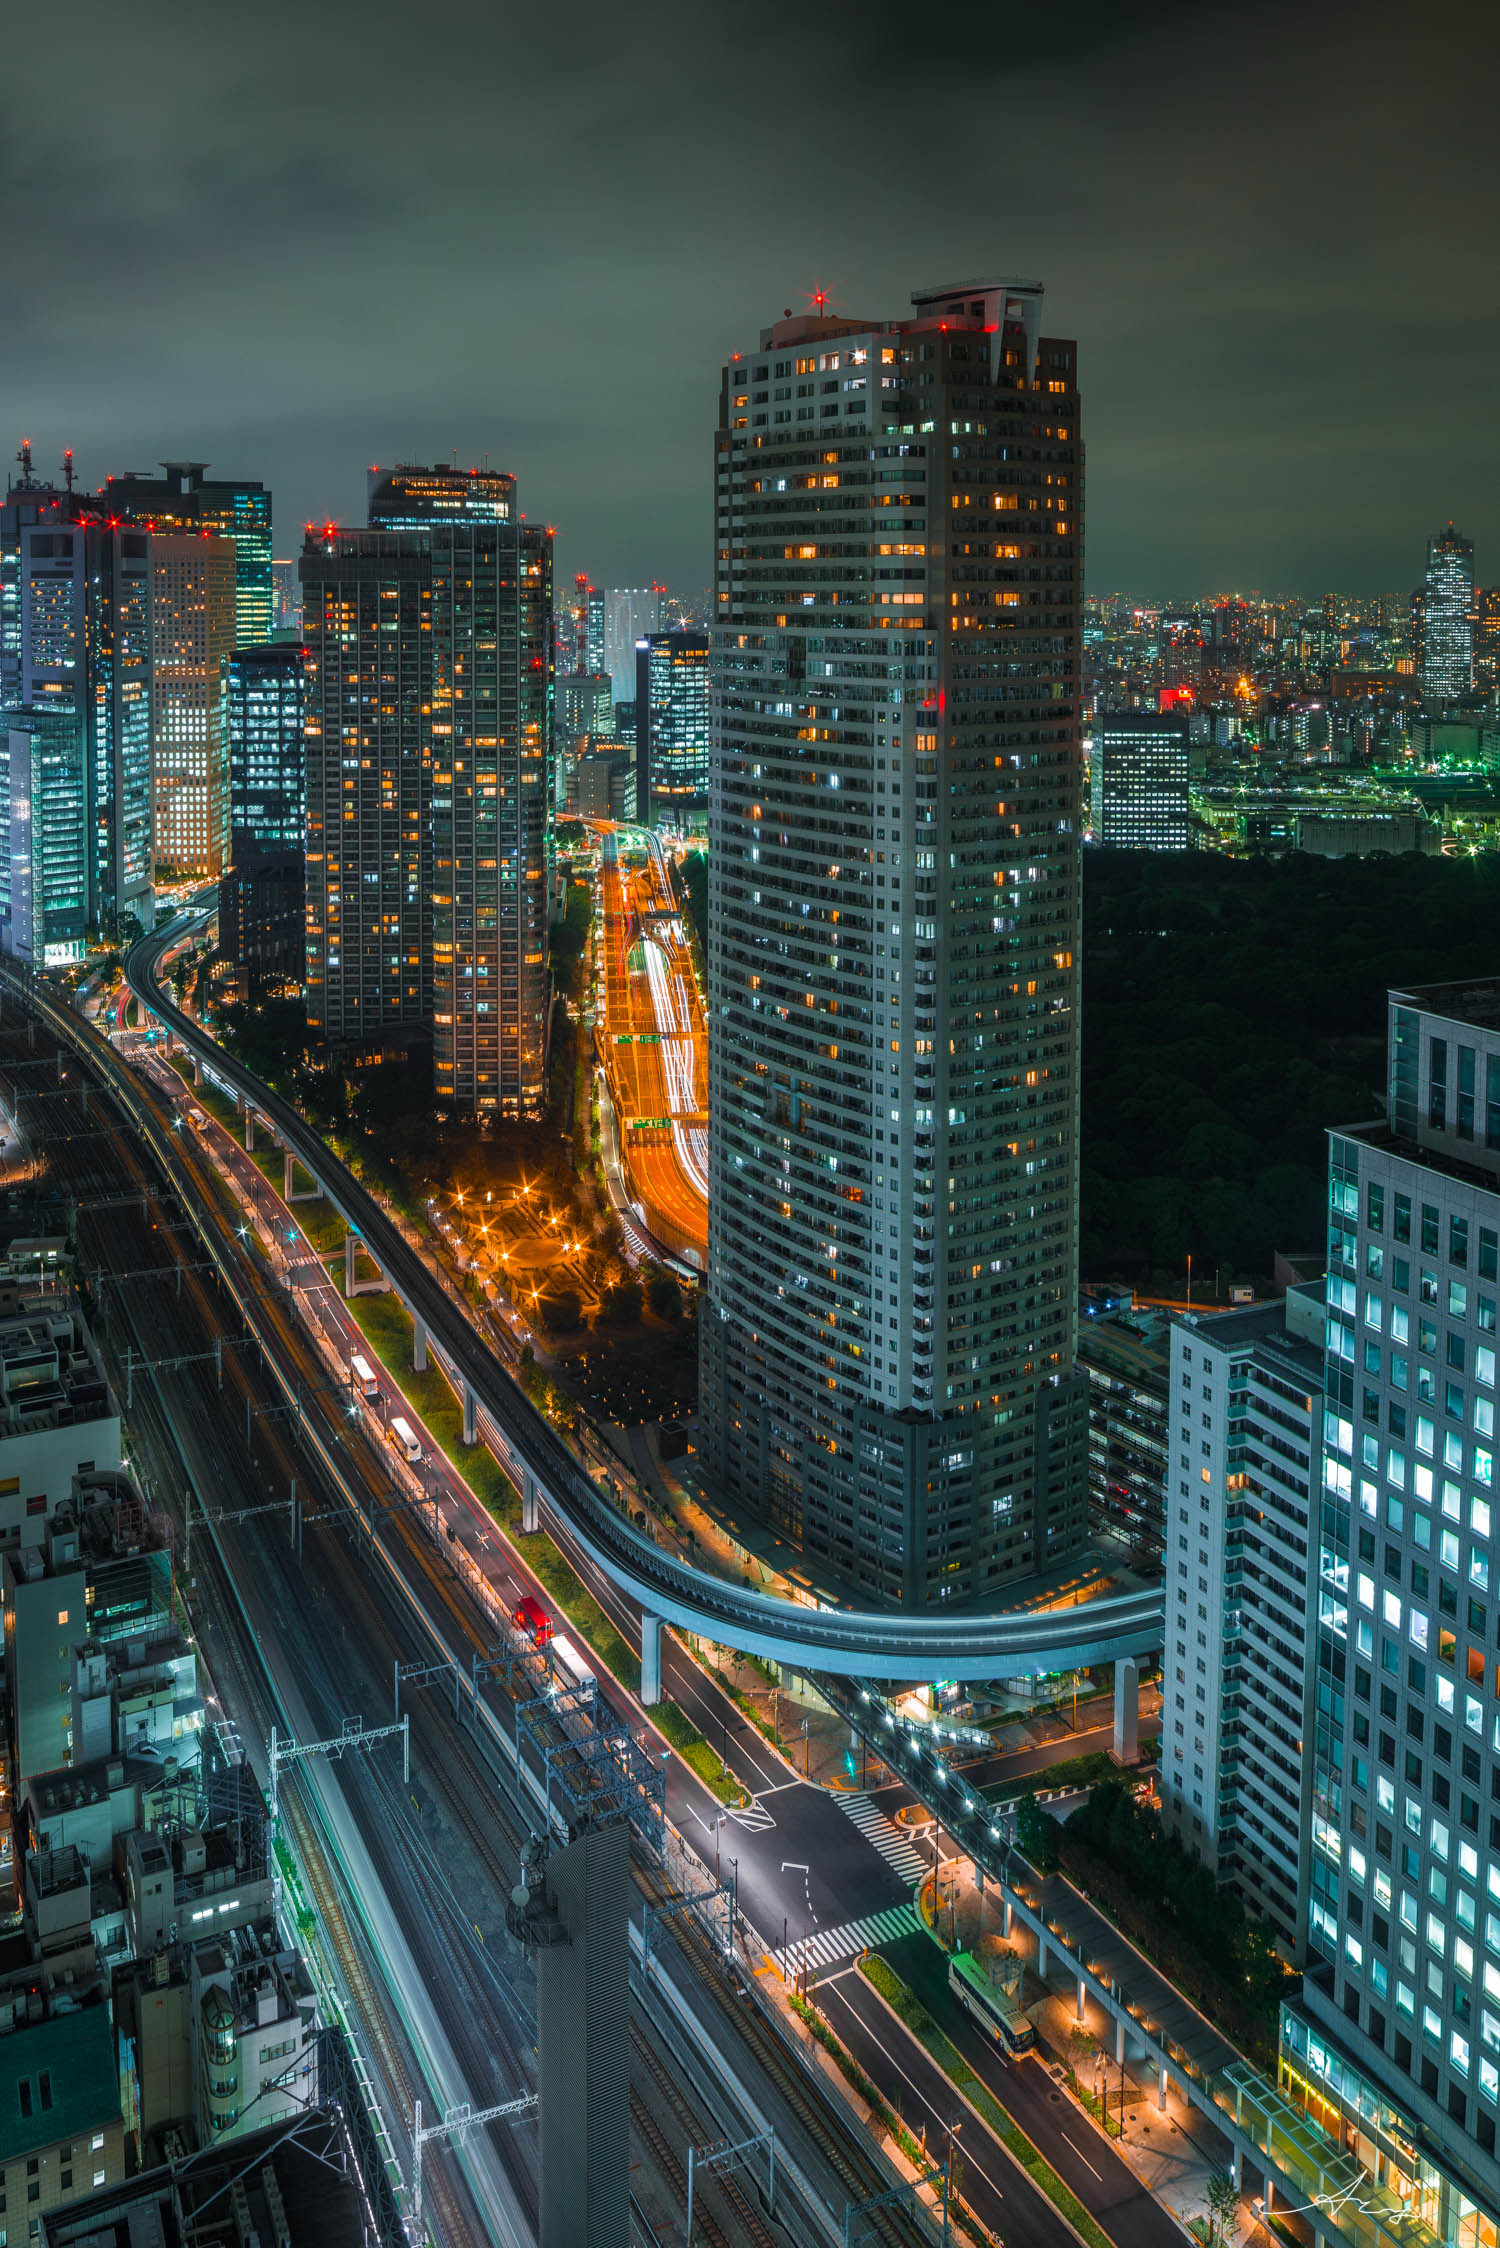 日本城市夜景:从东京到横滨.|摄影|环境/建筑摄影